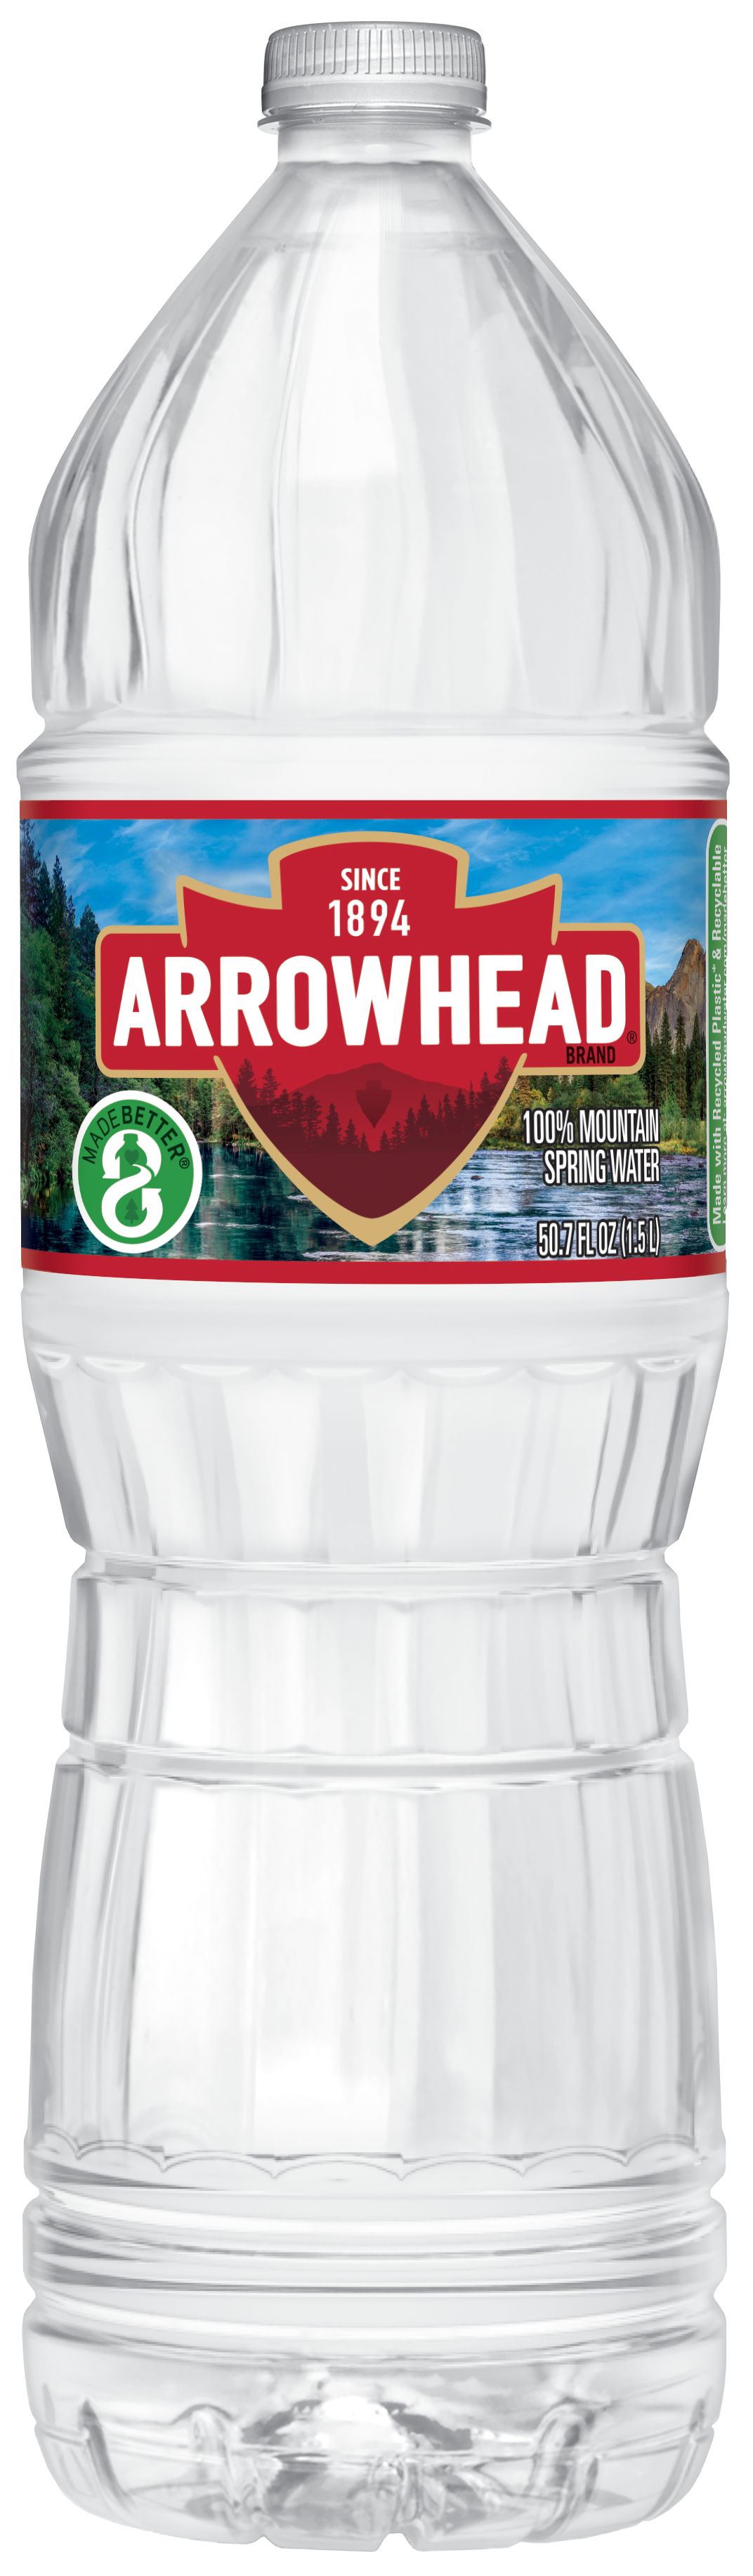 Arrowhead Spring Water bottle, 1.5 L, single